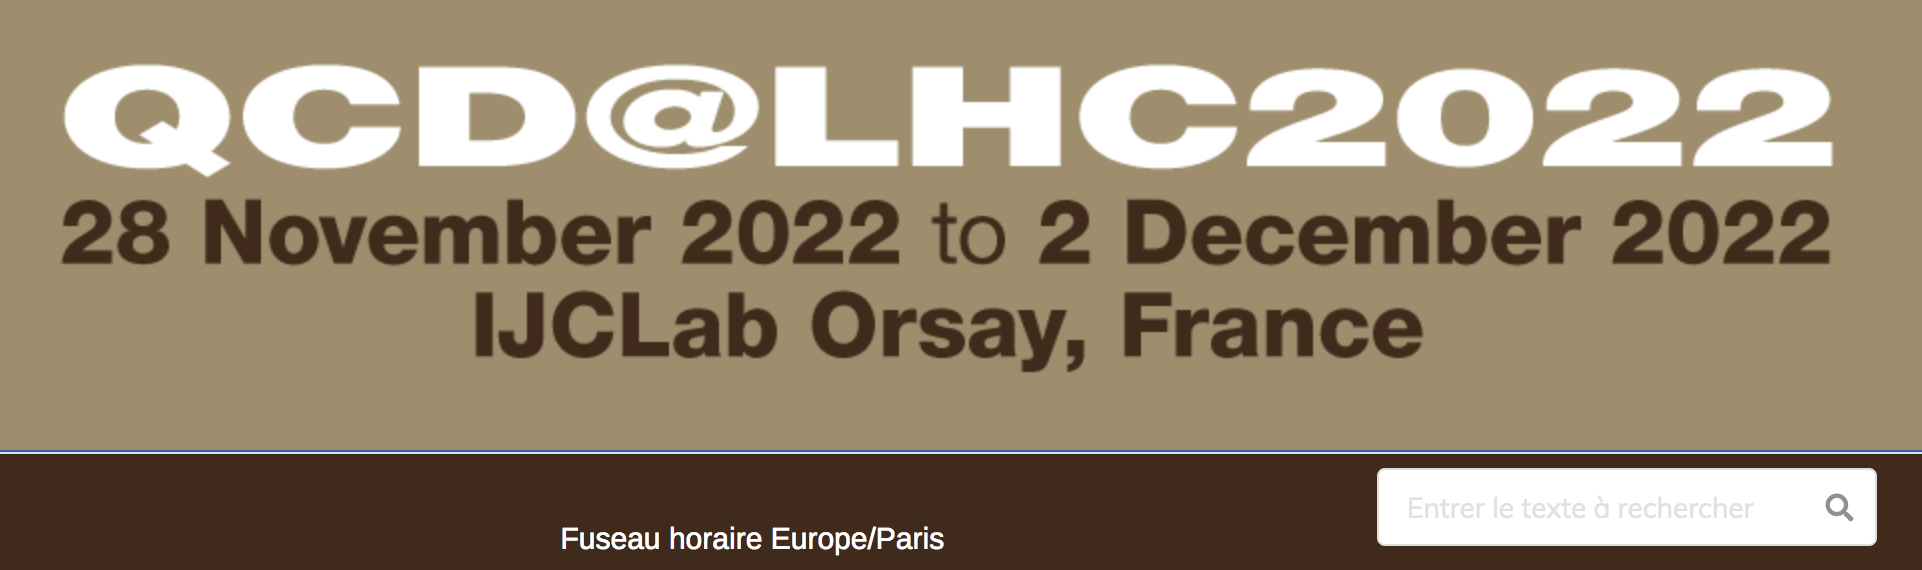 QCD@LHC2022